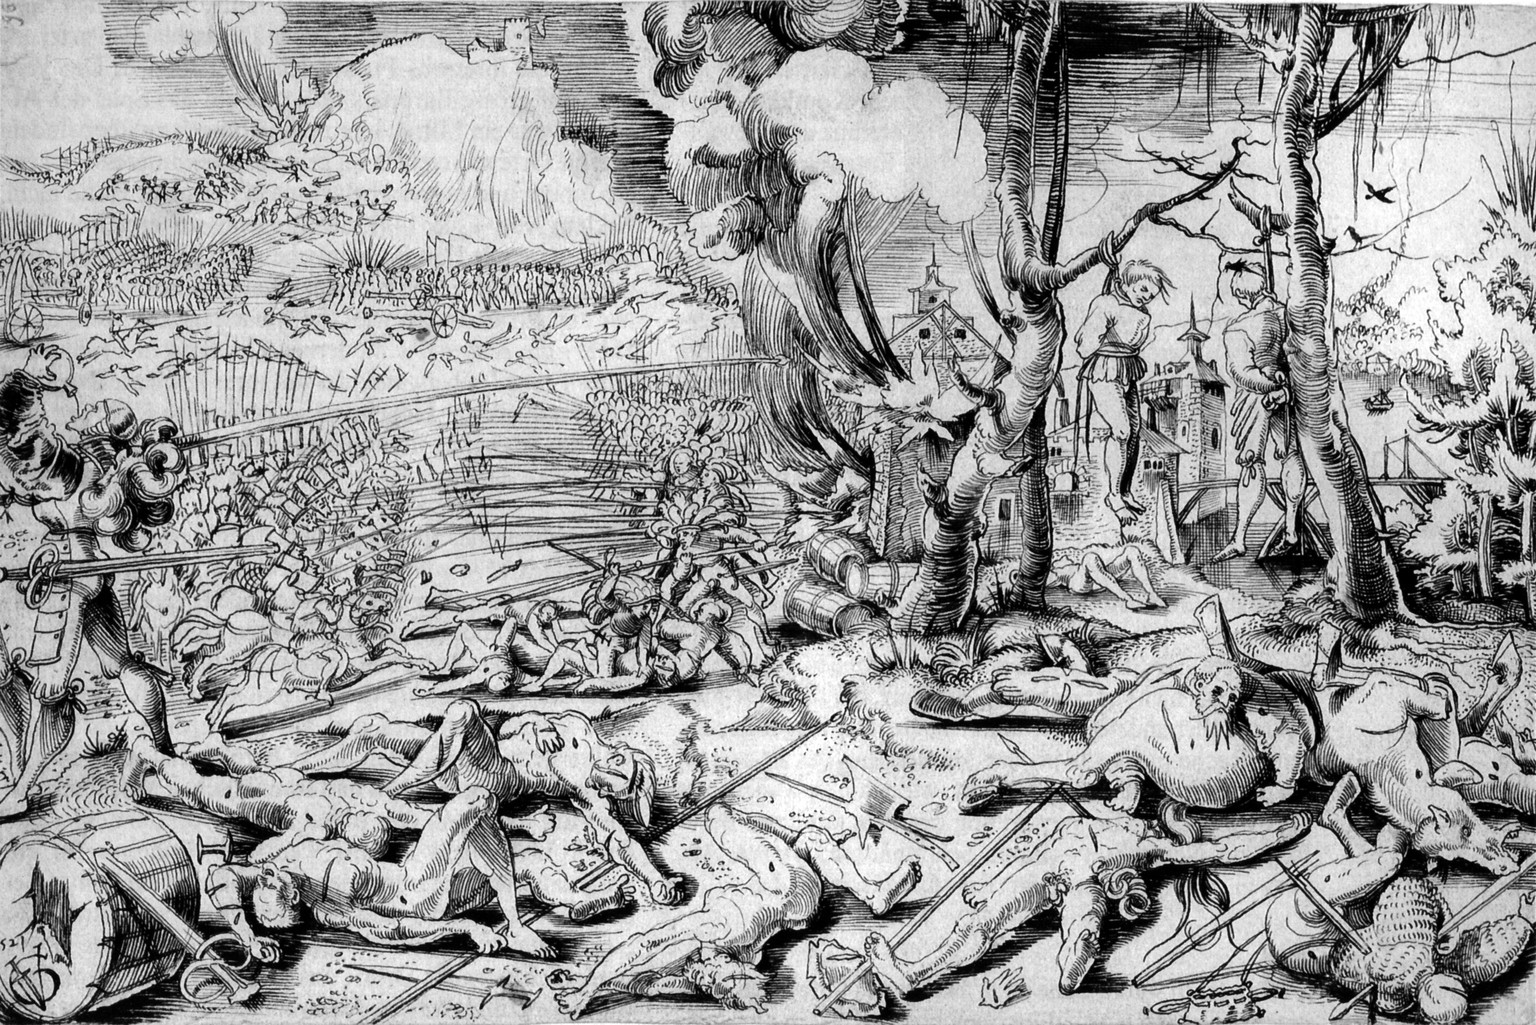 Drastische Darstellung des Schlachtfeldes durch den Augenzeugen Urs Graf, 1521

Marignano Schlacht